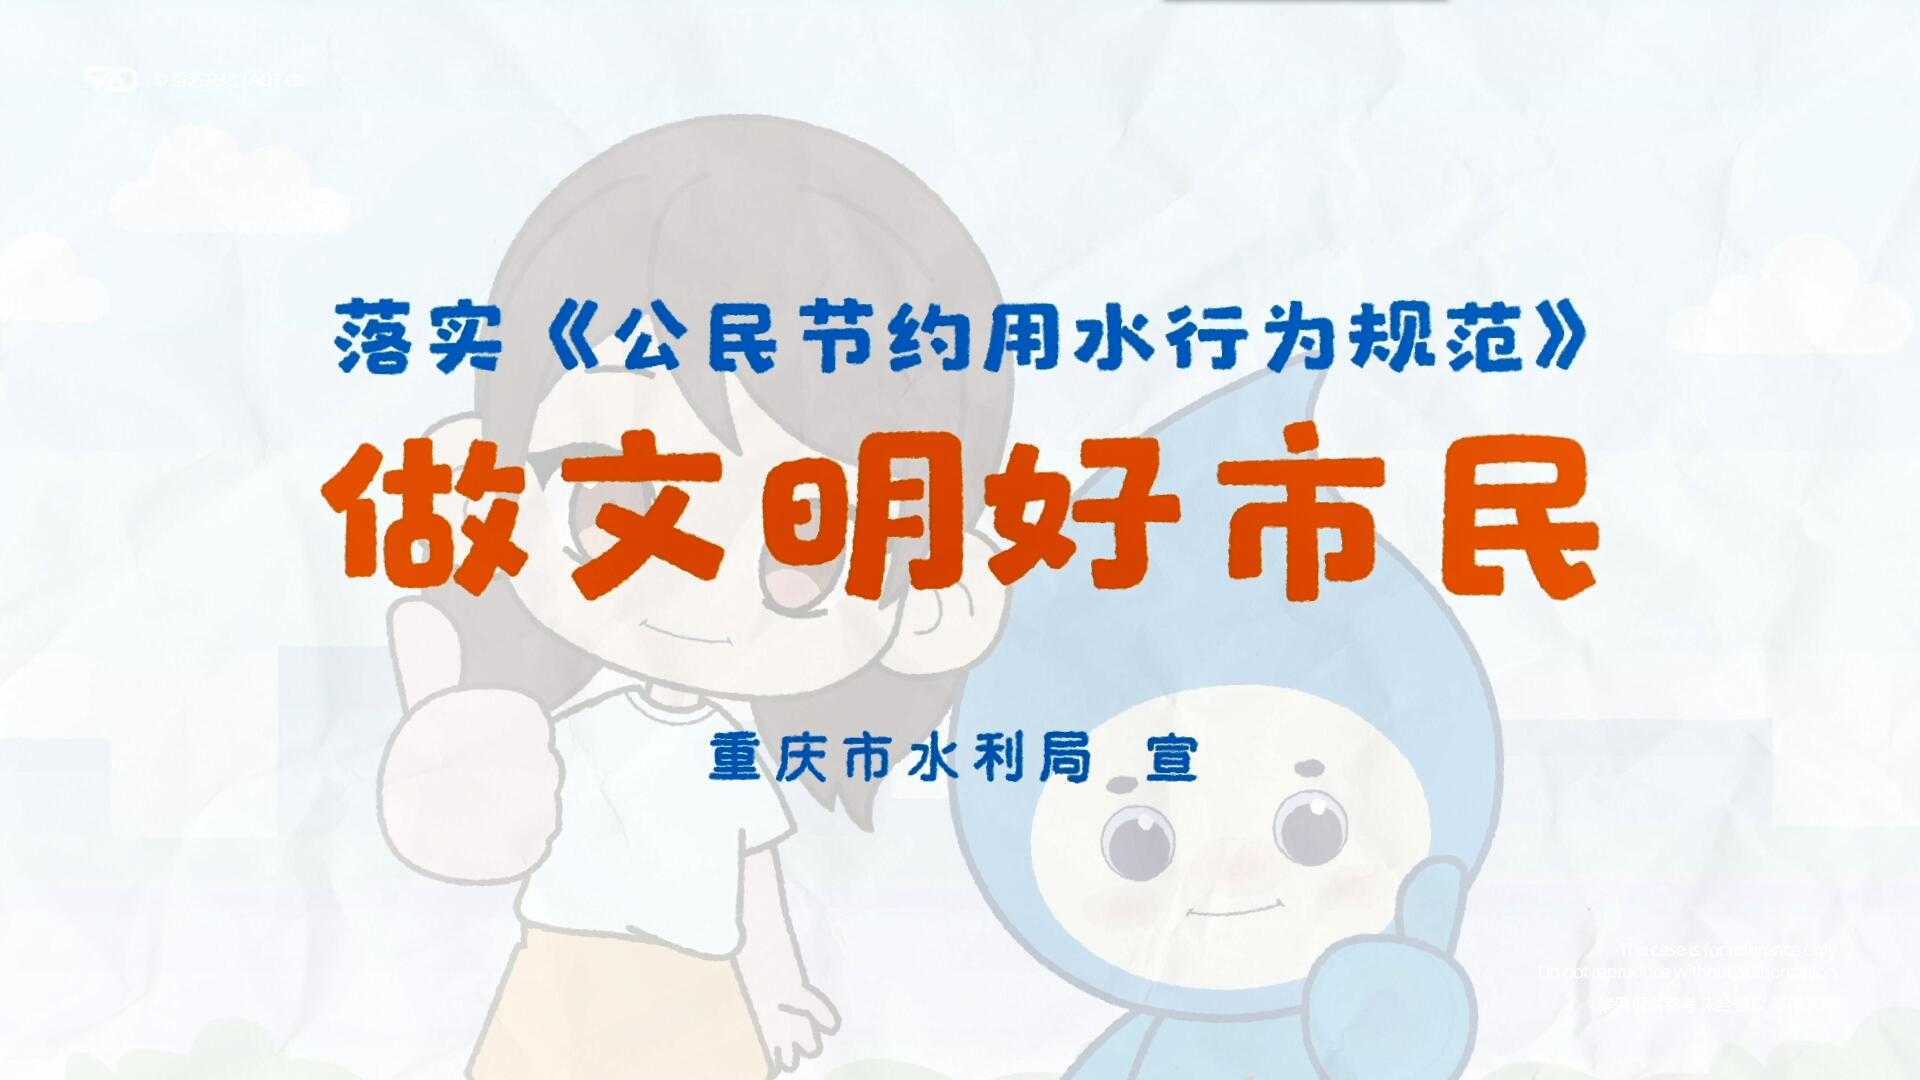 [原创动画制作] 重庆水利局 节约用水文明规范 科普教育宣传片